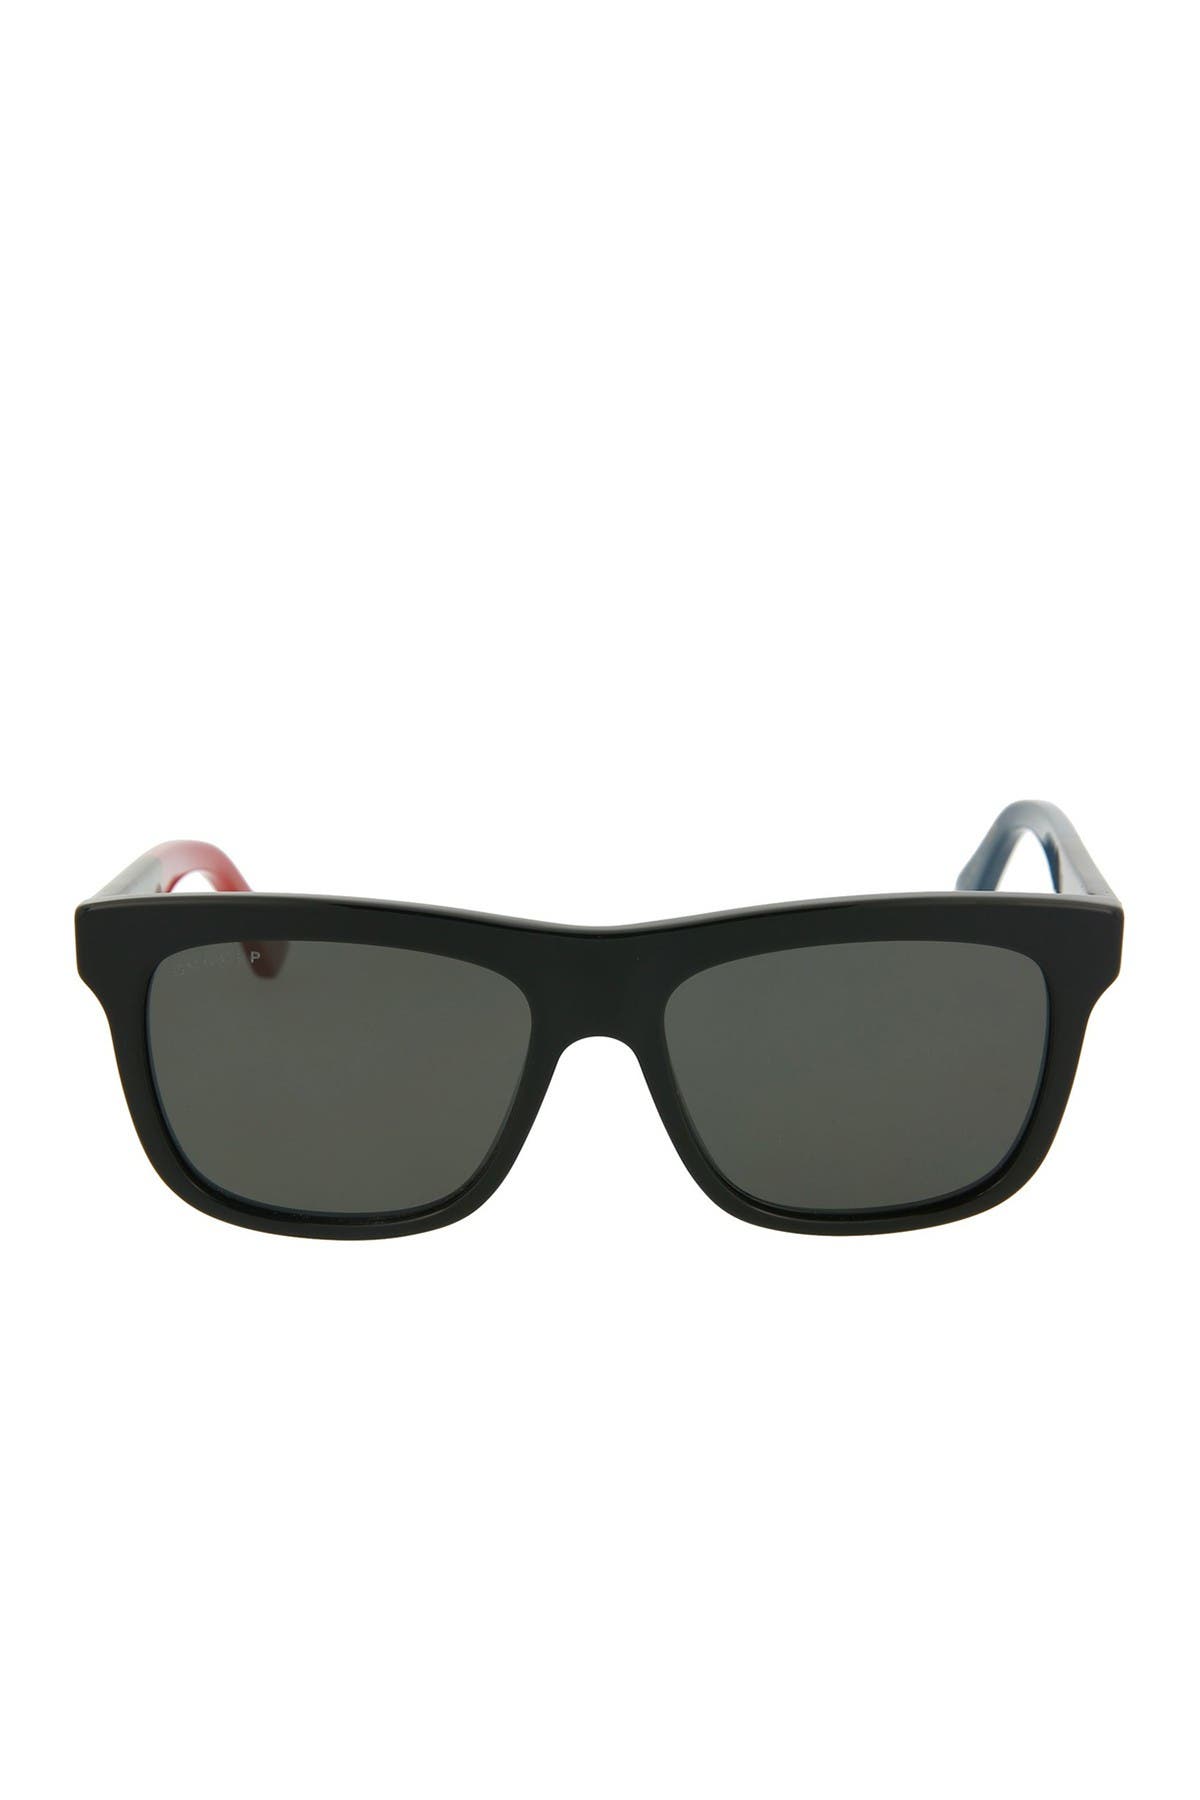 GUCCI | 54mm Square Sunglasses 